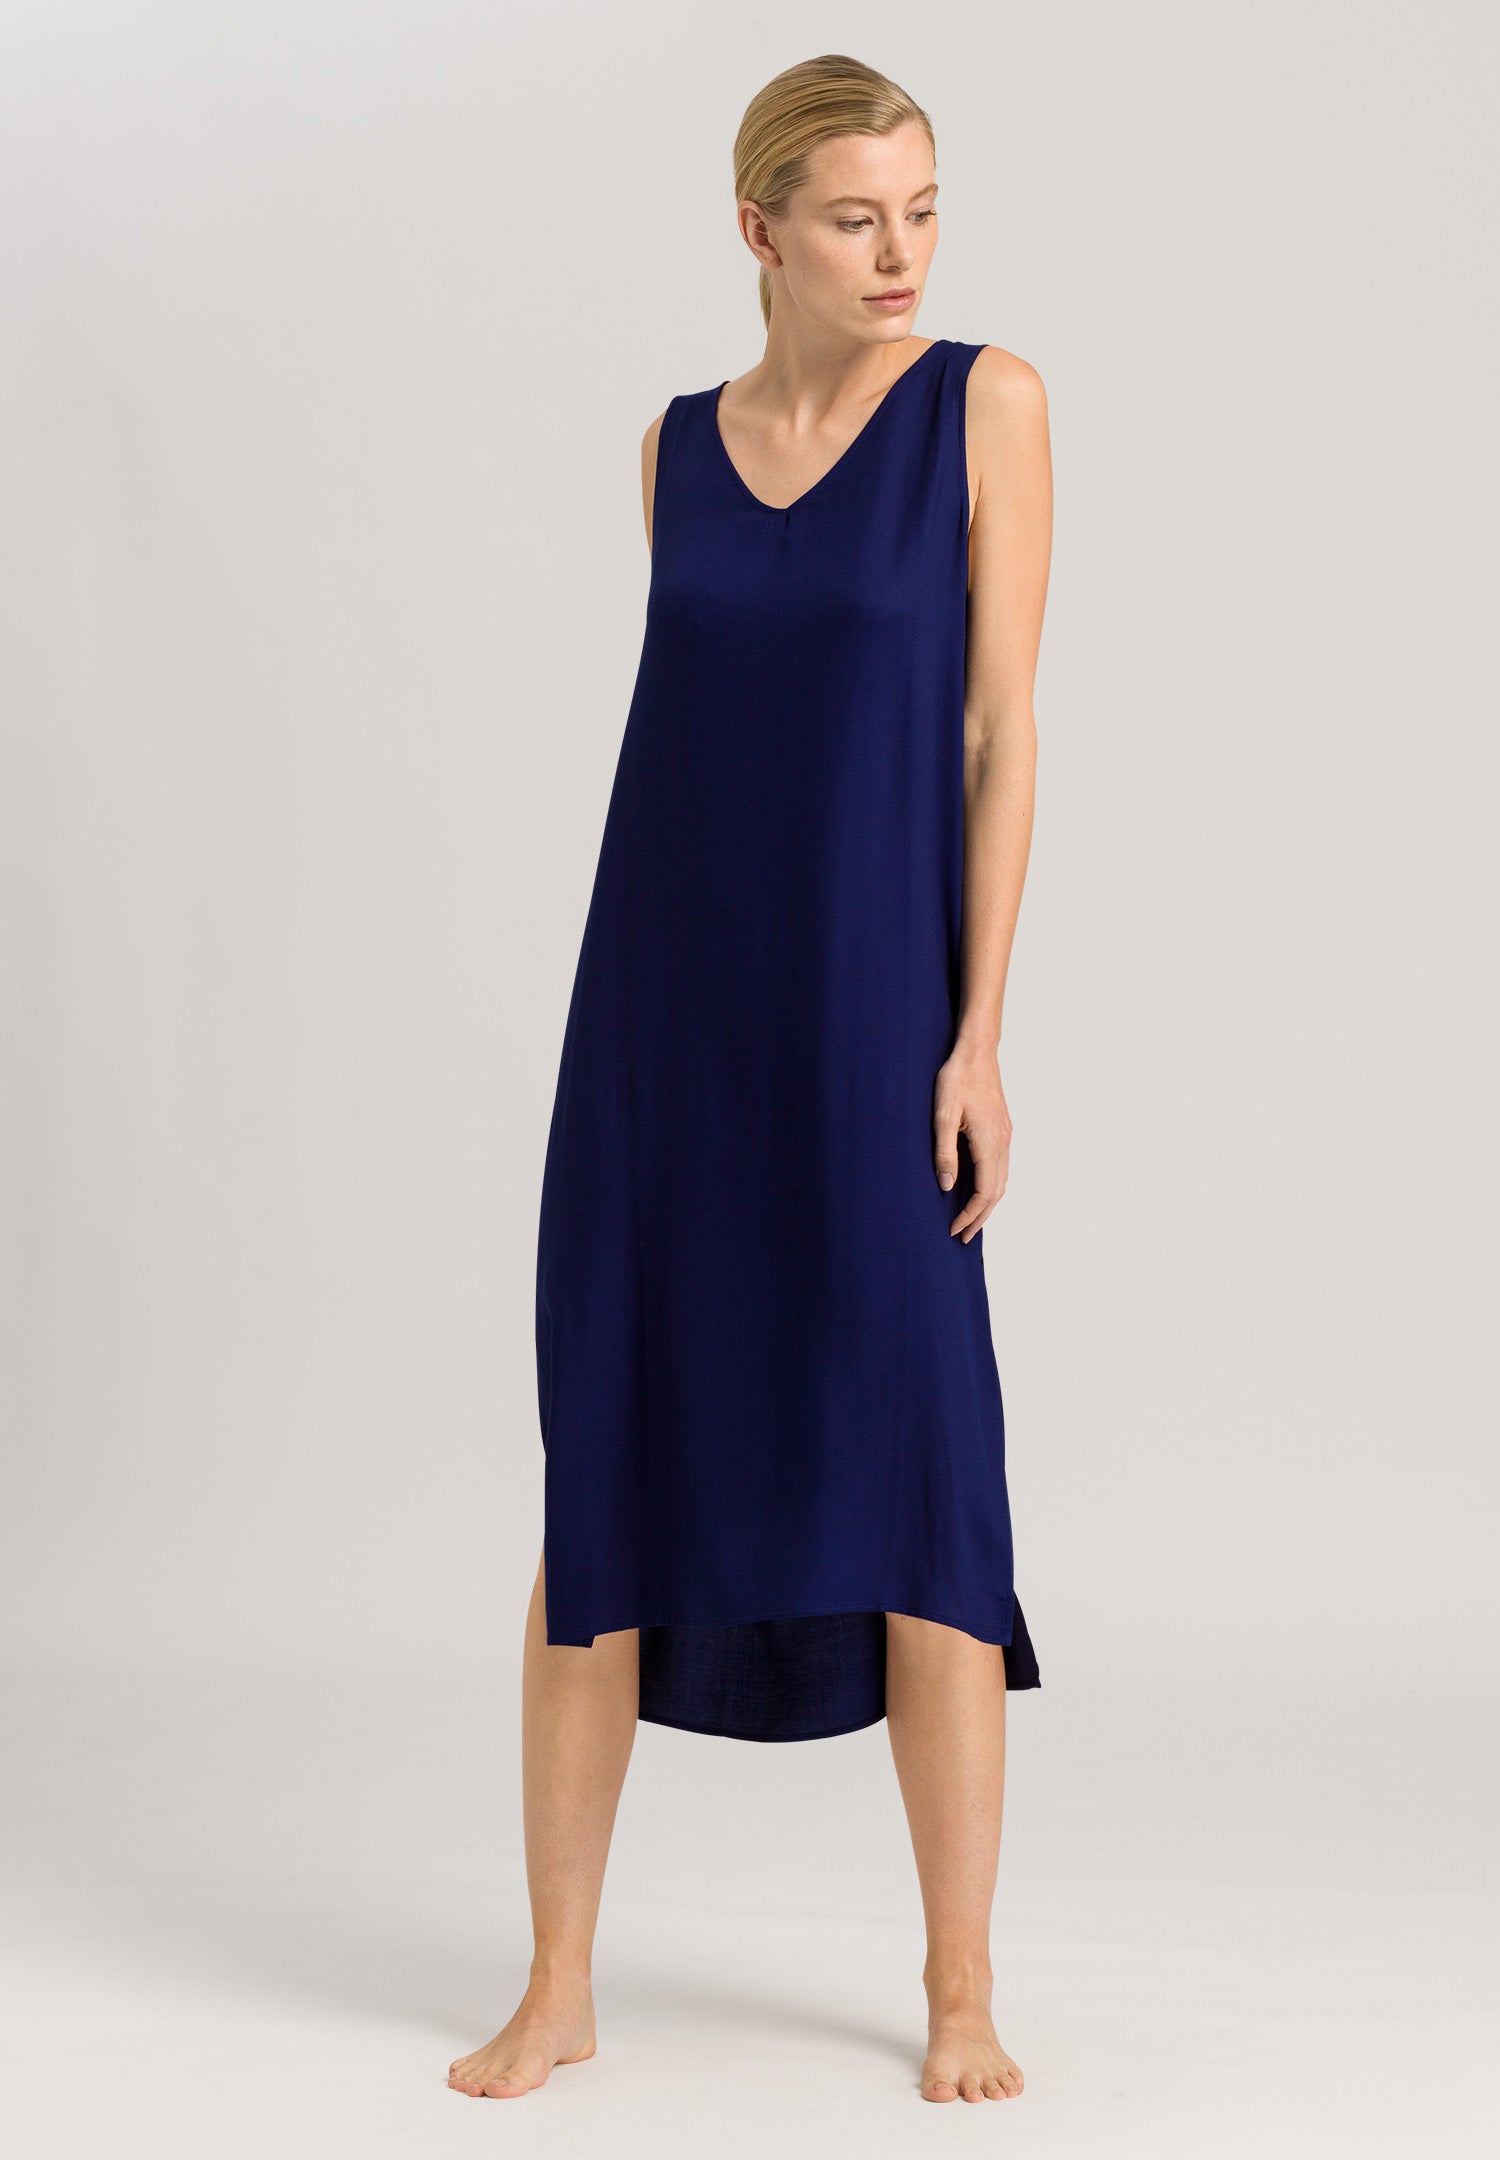 78667 Favourites Dress - 1658 Beacon Blue